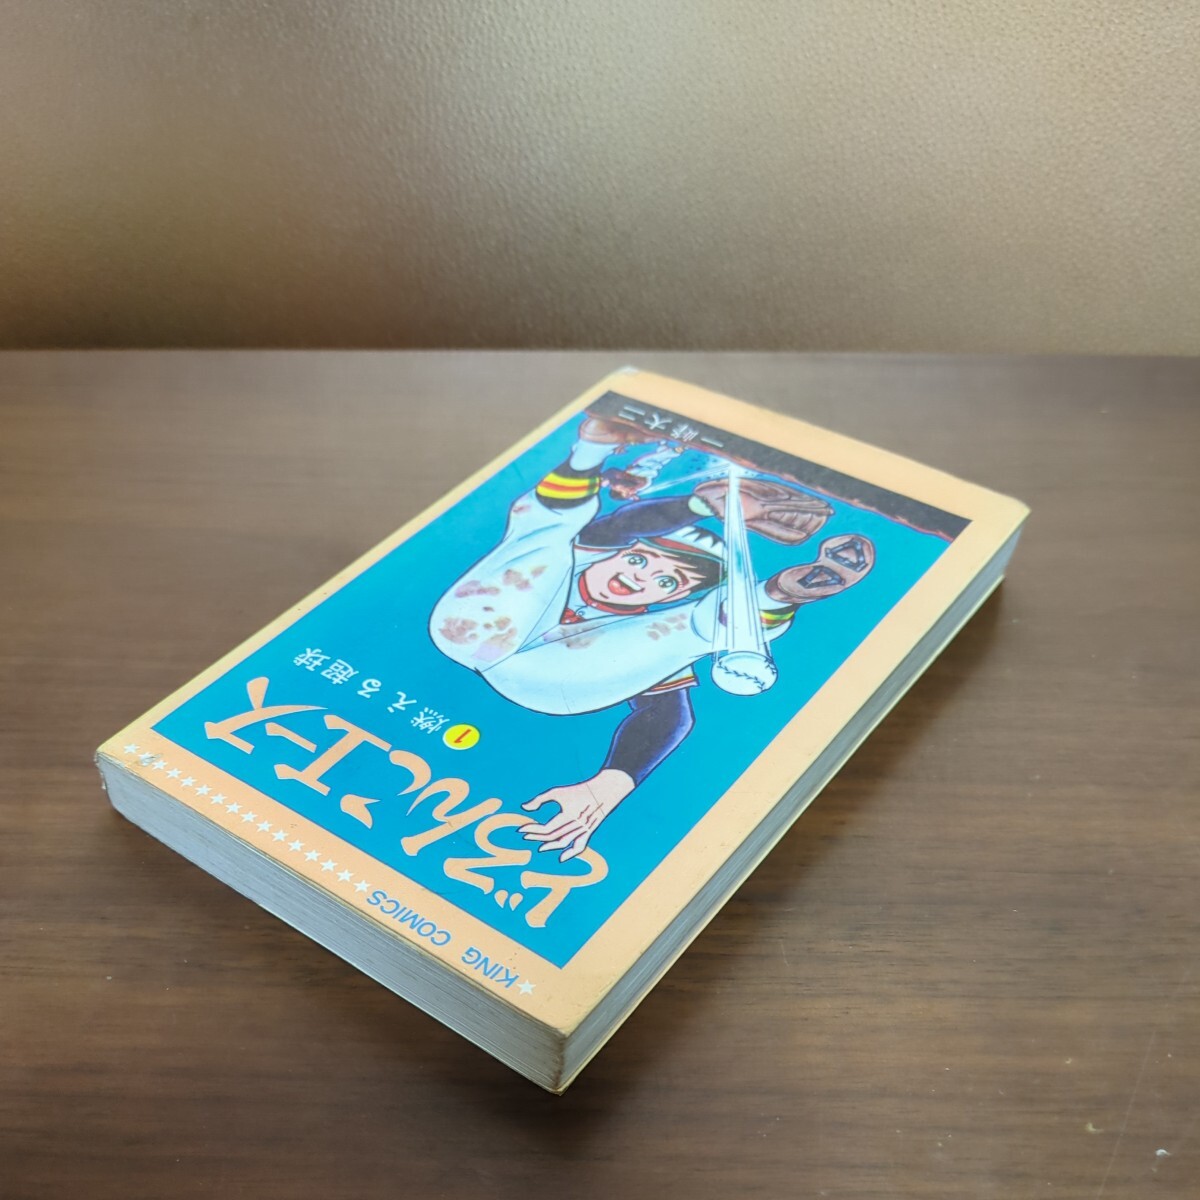 [.... Ace (1) гореть супер лампочка ] один . большой три Shonen-gahosha Co., Ltd. Showa манга книга